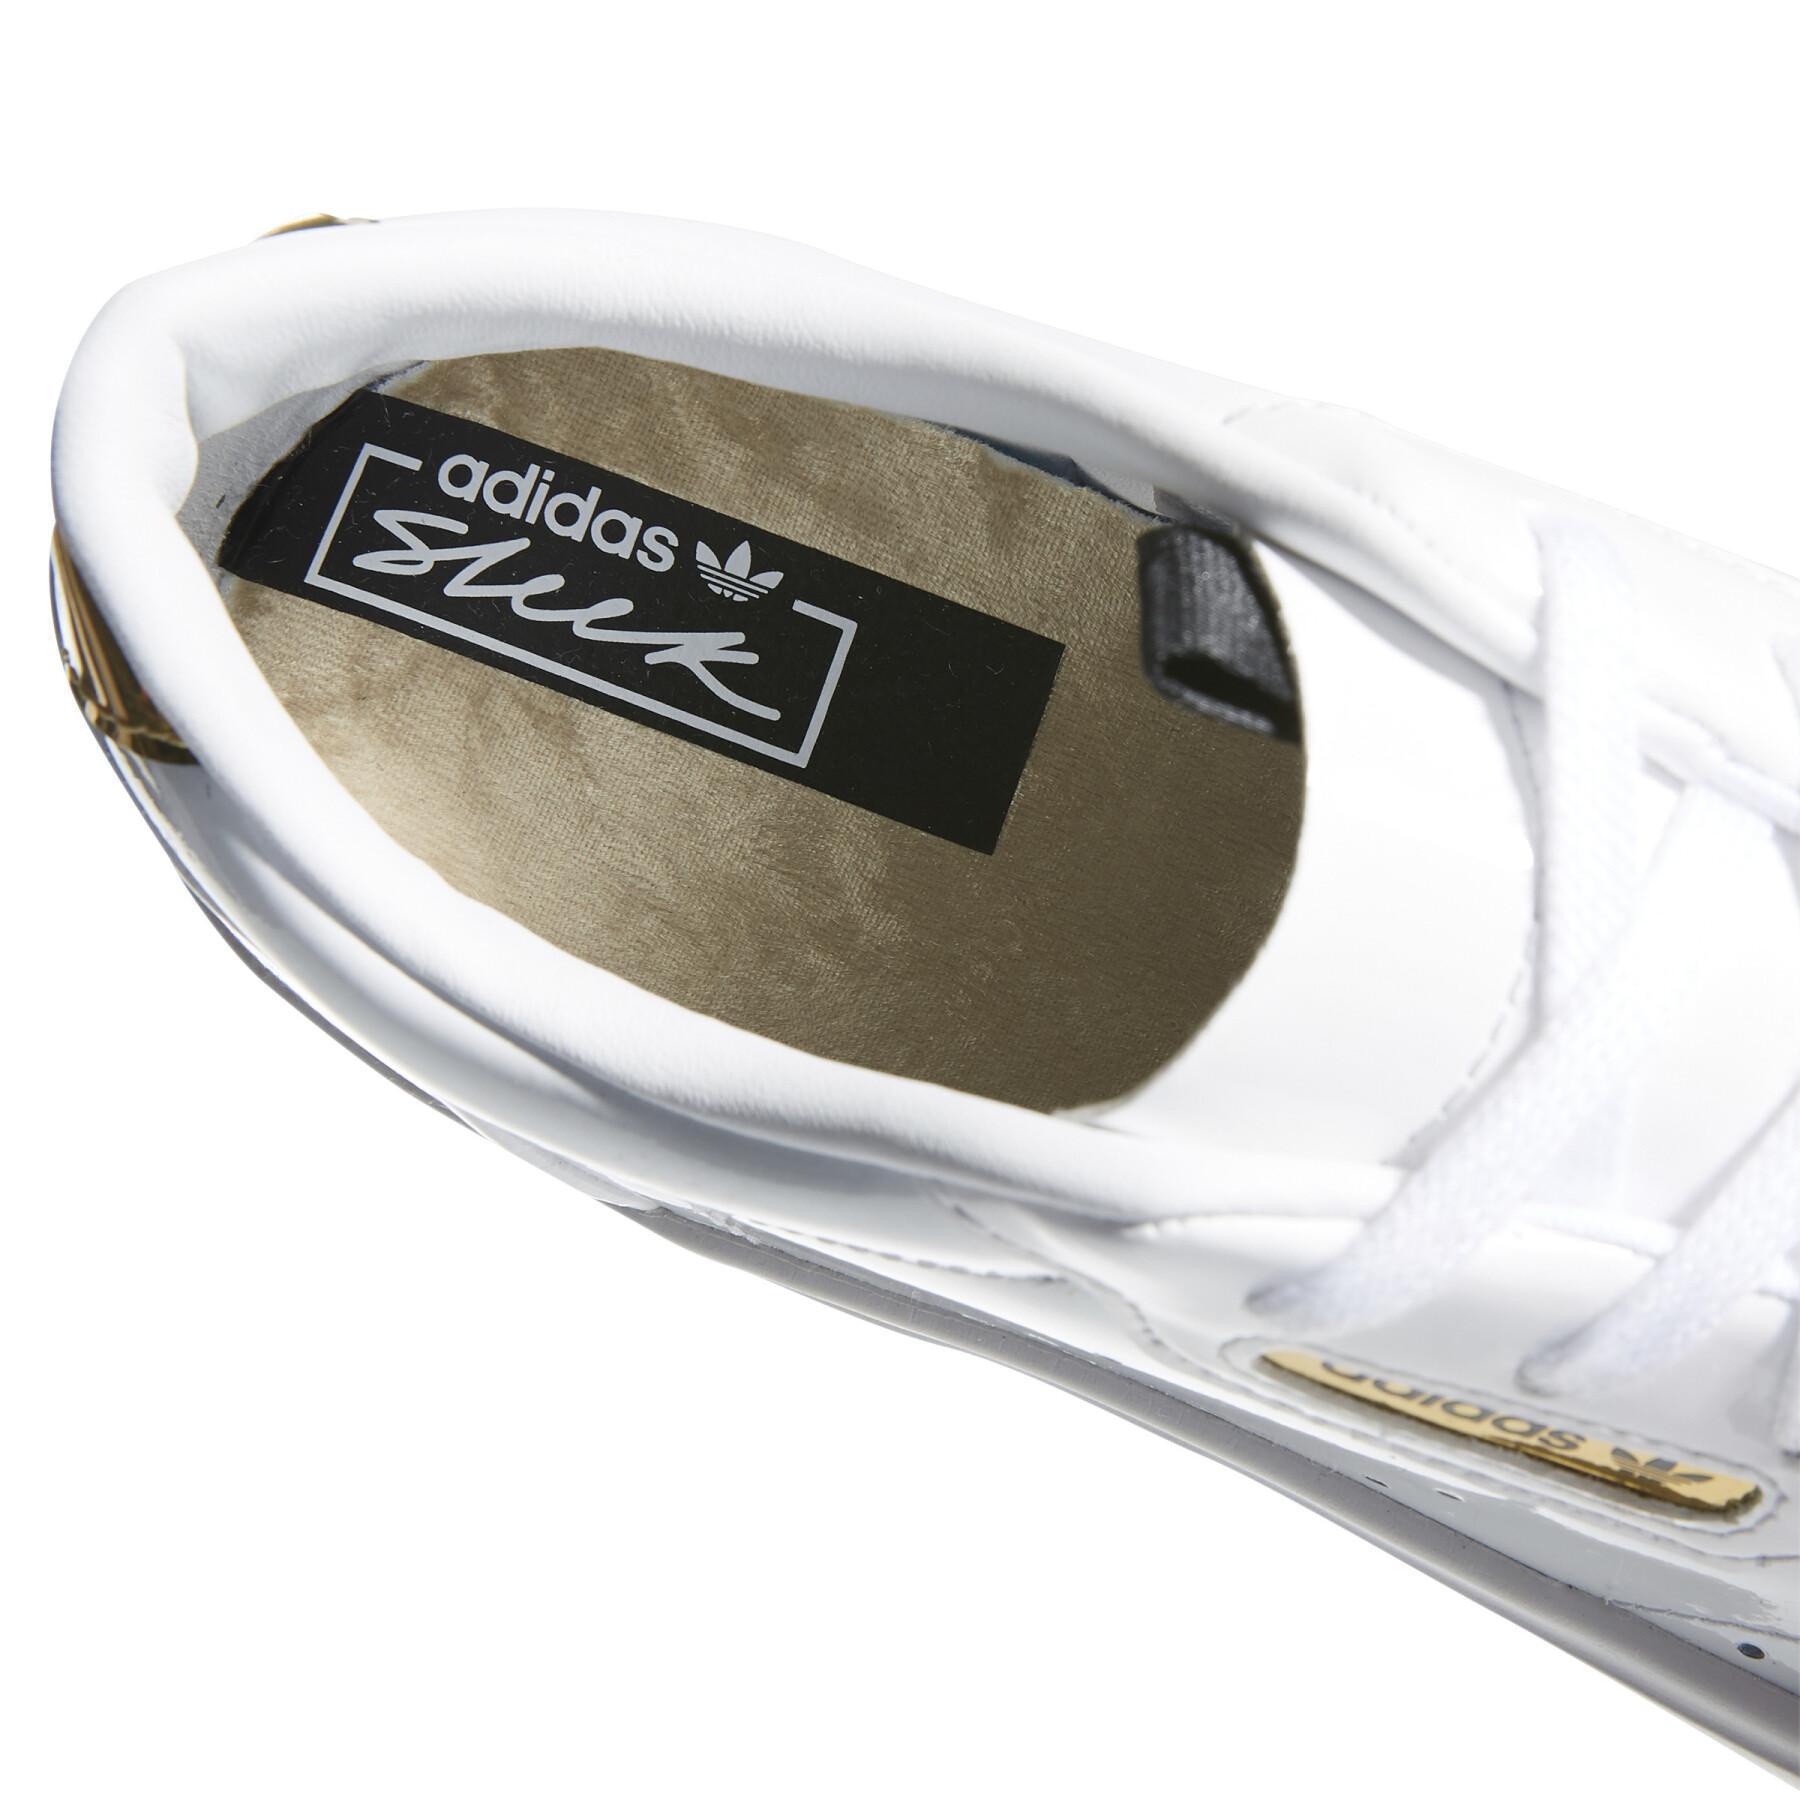 Zapatillas de deporte para mujeres adidas Originals Sleek